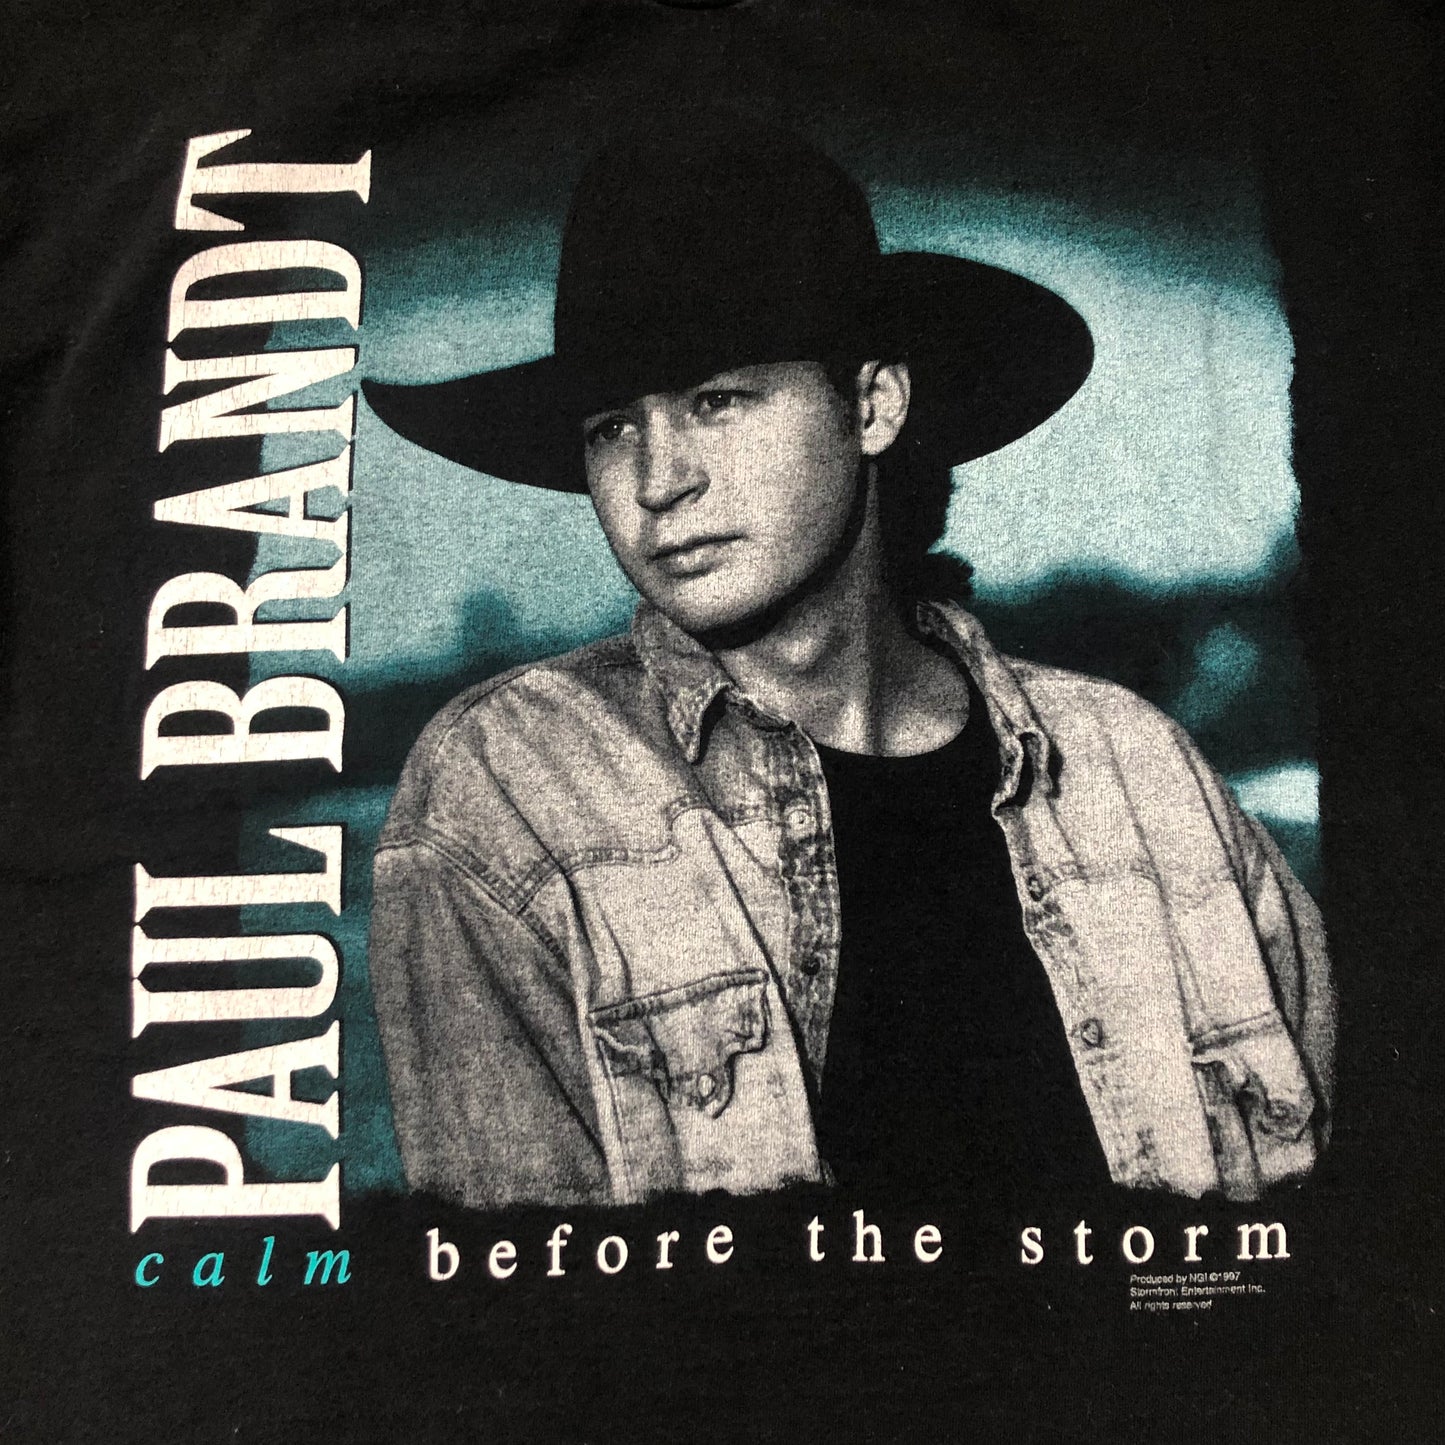 1997 Vintage Western Paul Brandt Calm Before the Storm Concert T-Shirt | Storm Front Tour